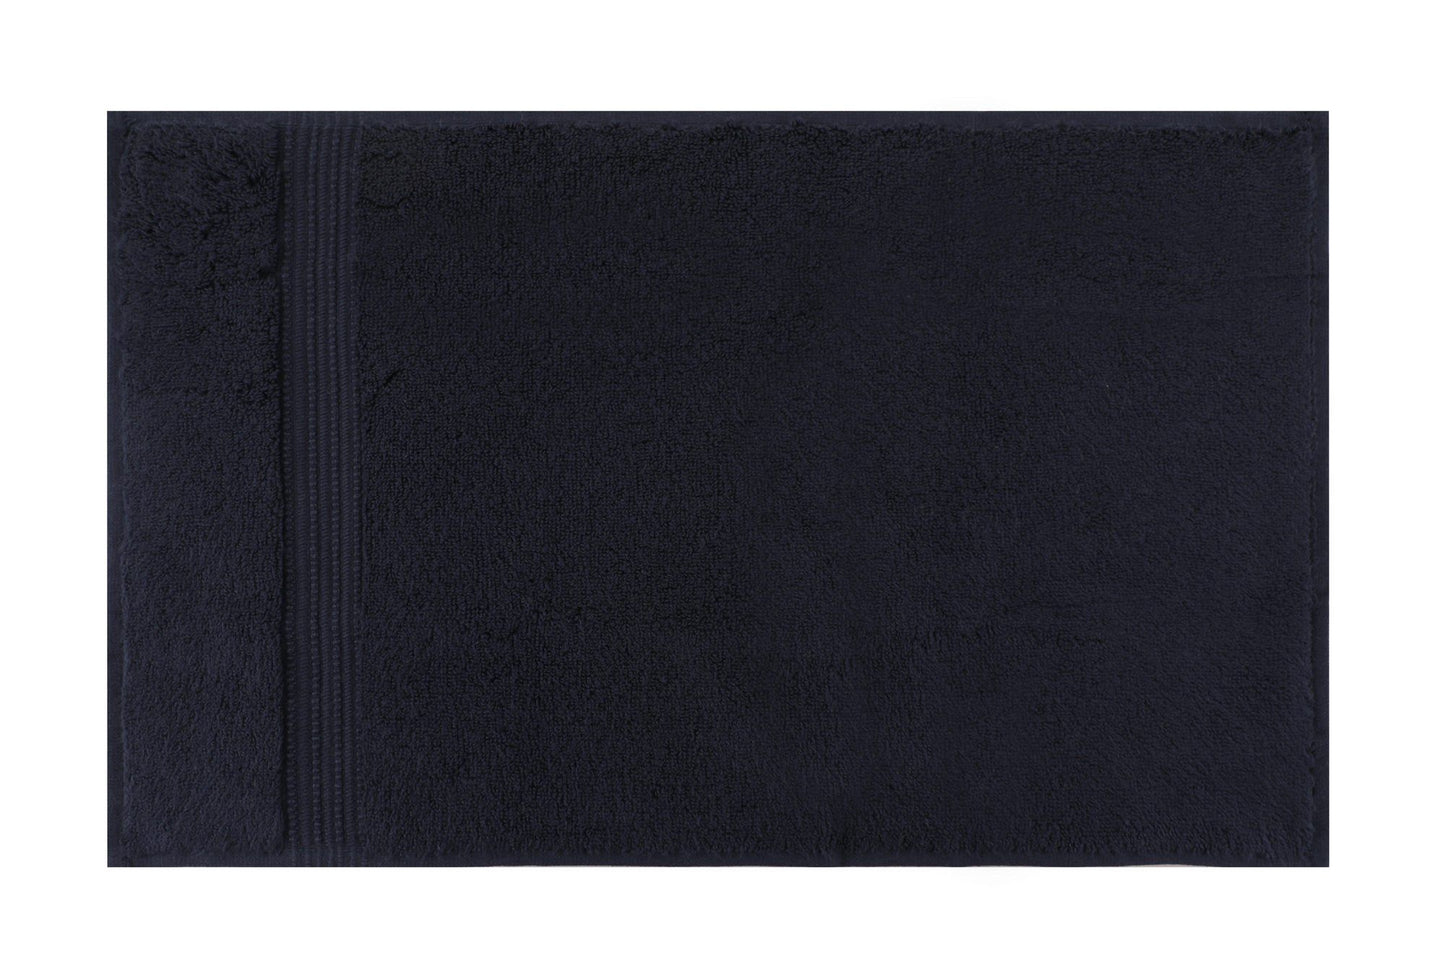 Håndklædesæt - Chicago sæt - mørkeblå